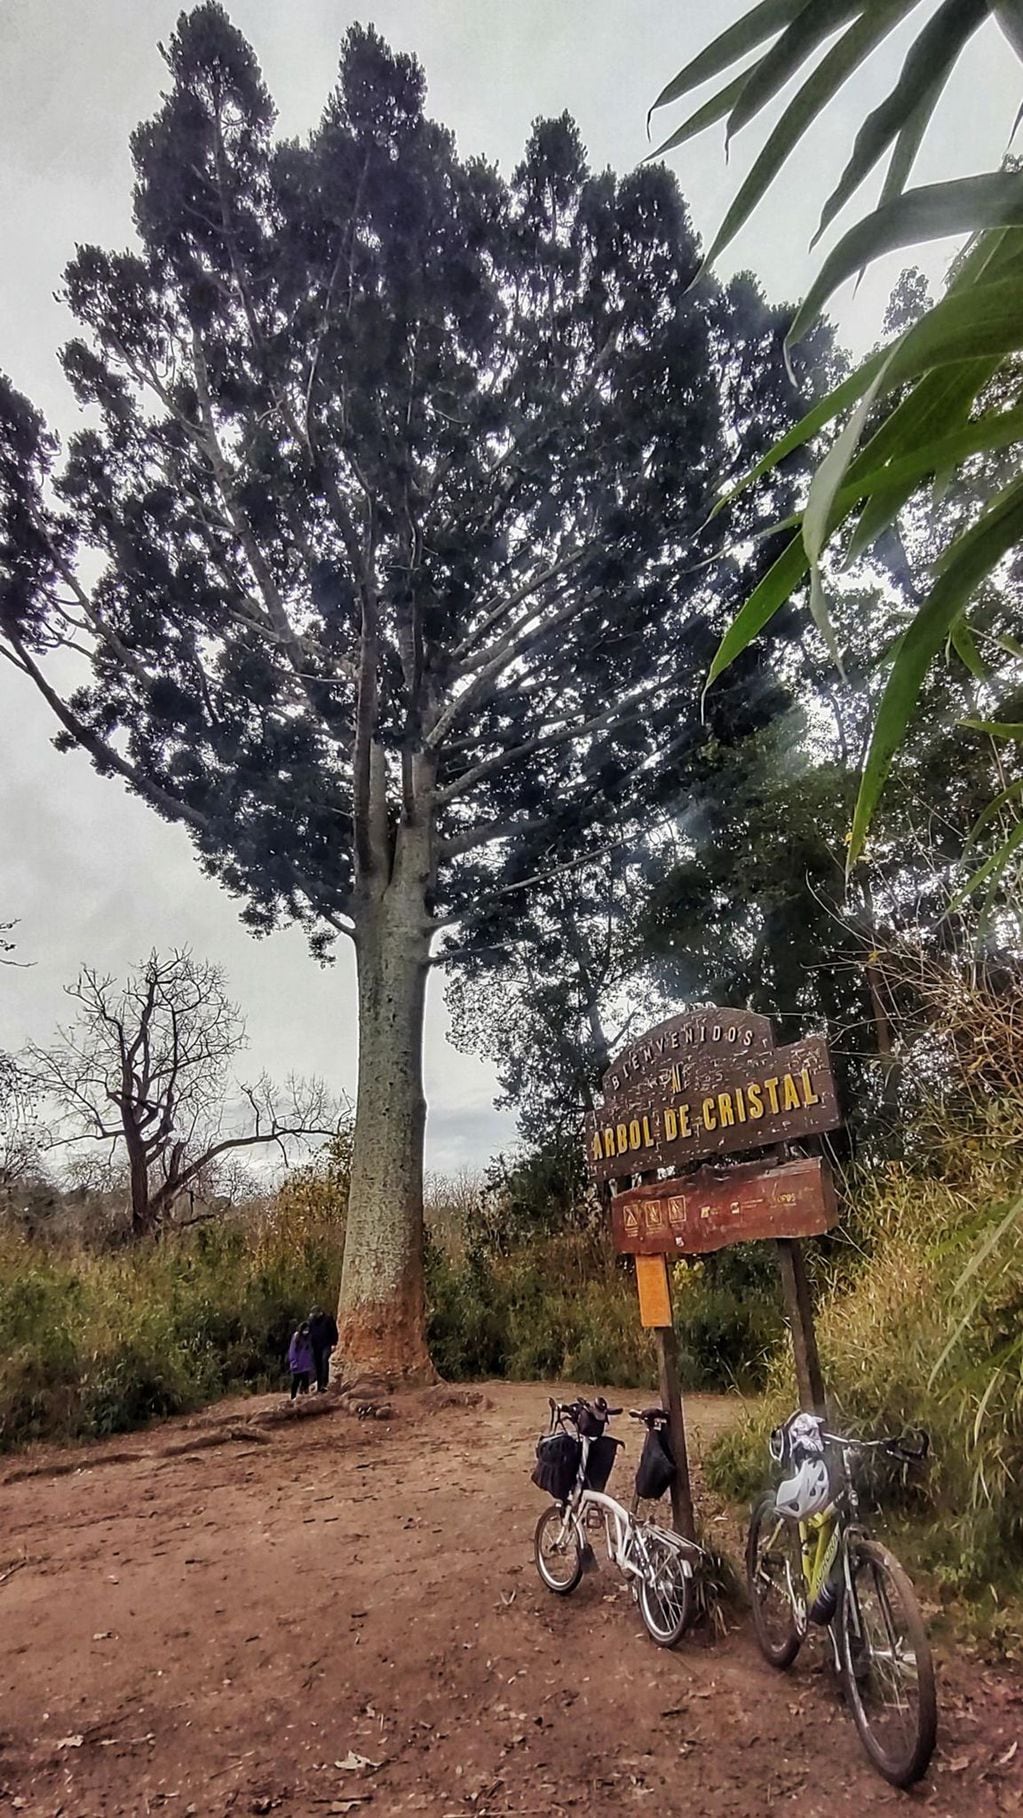 El Árbol de Cristal ubicado en el Parque Pereyra Iraola.